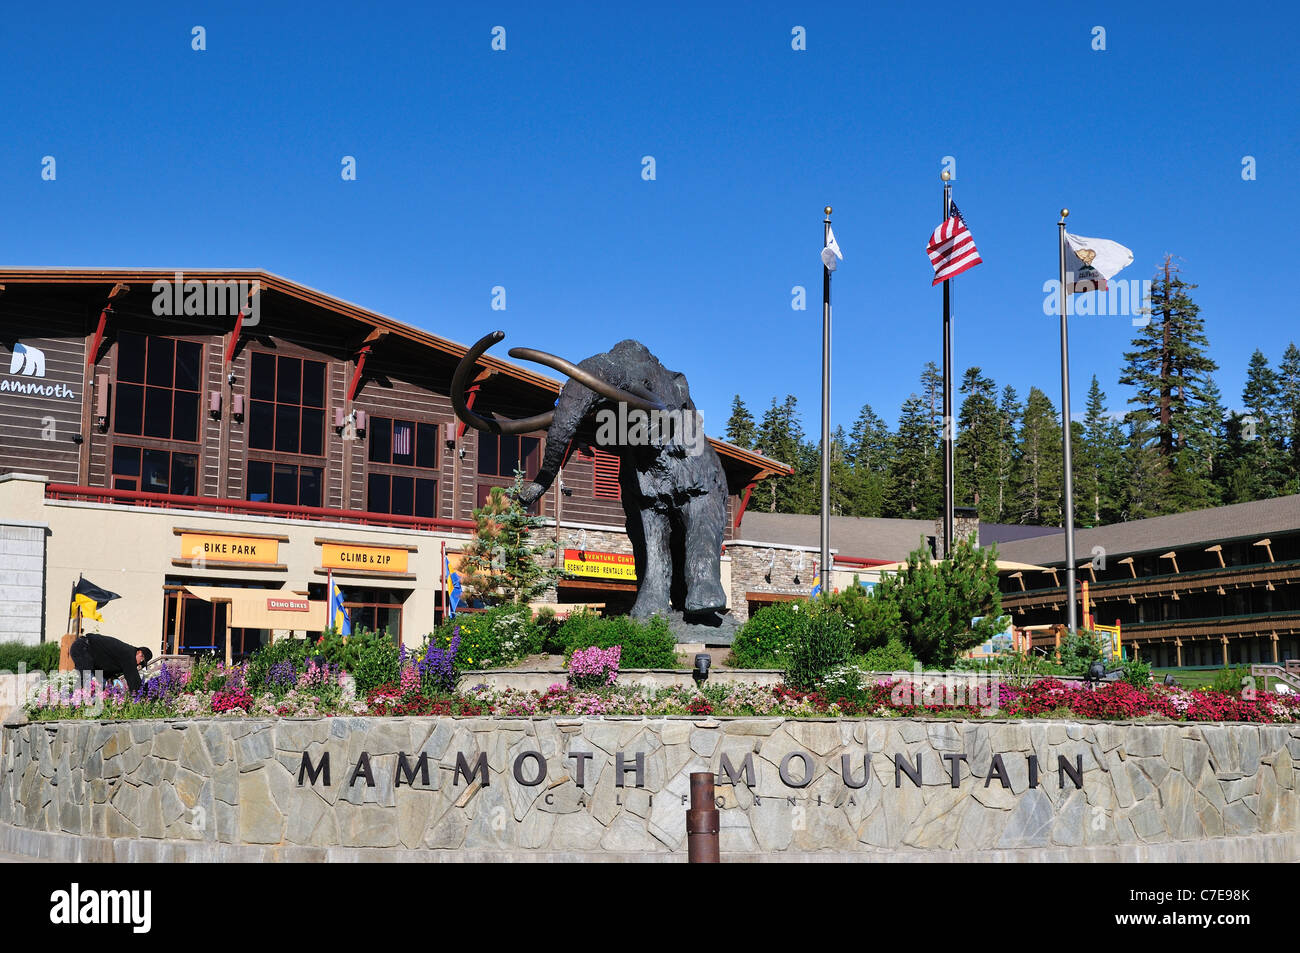 Une statue de bronze de mammouth géant se dresse en face de centre de visiteurs à Mammoth Mountain, California, USA. Banque D'Images